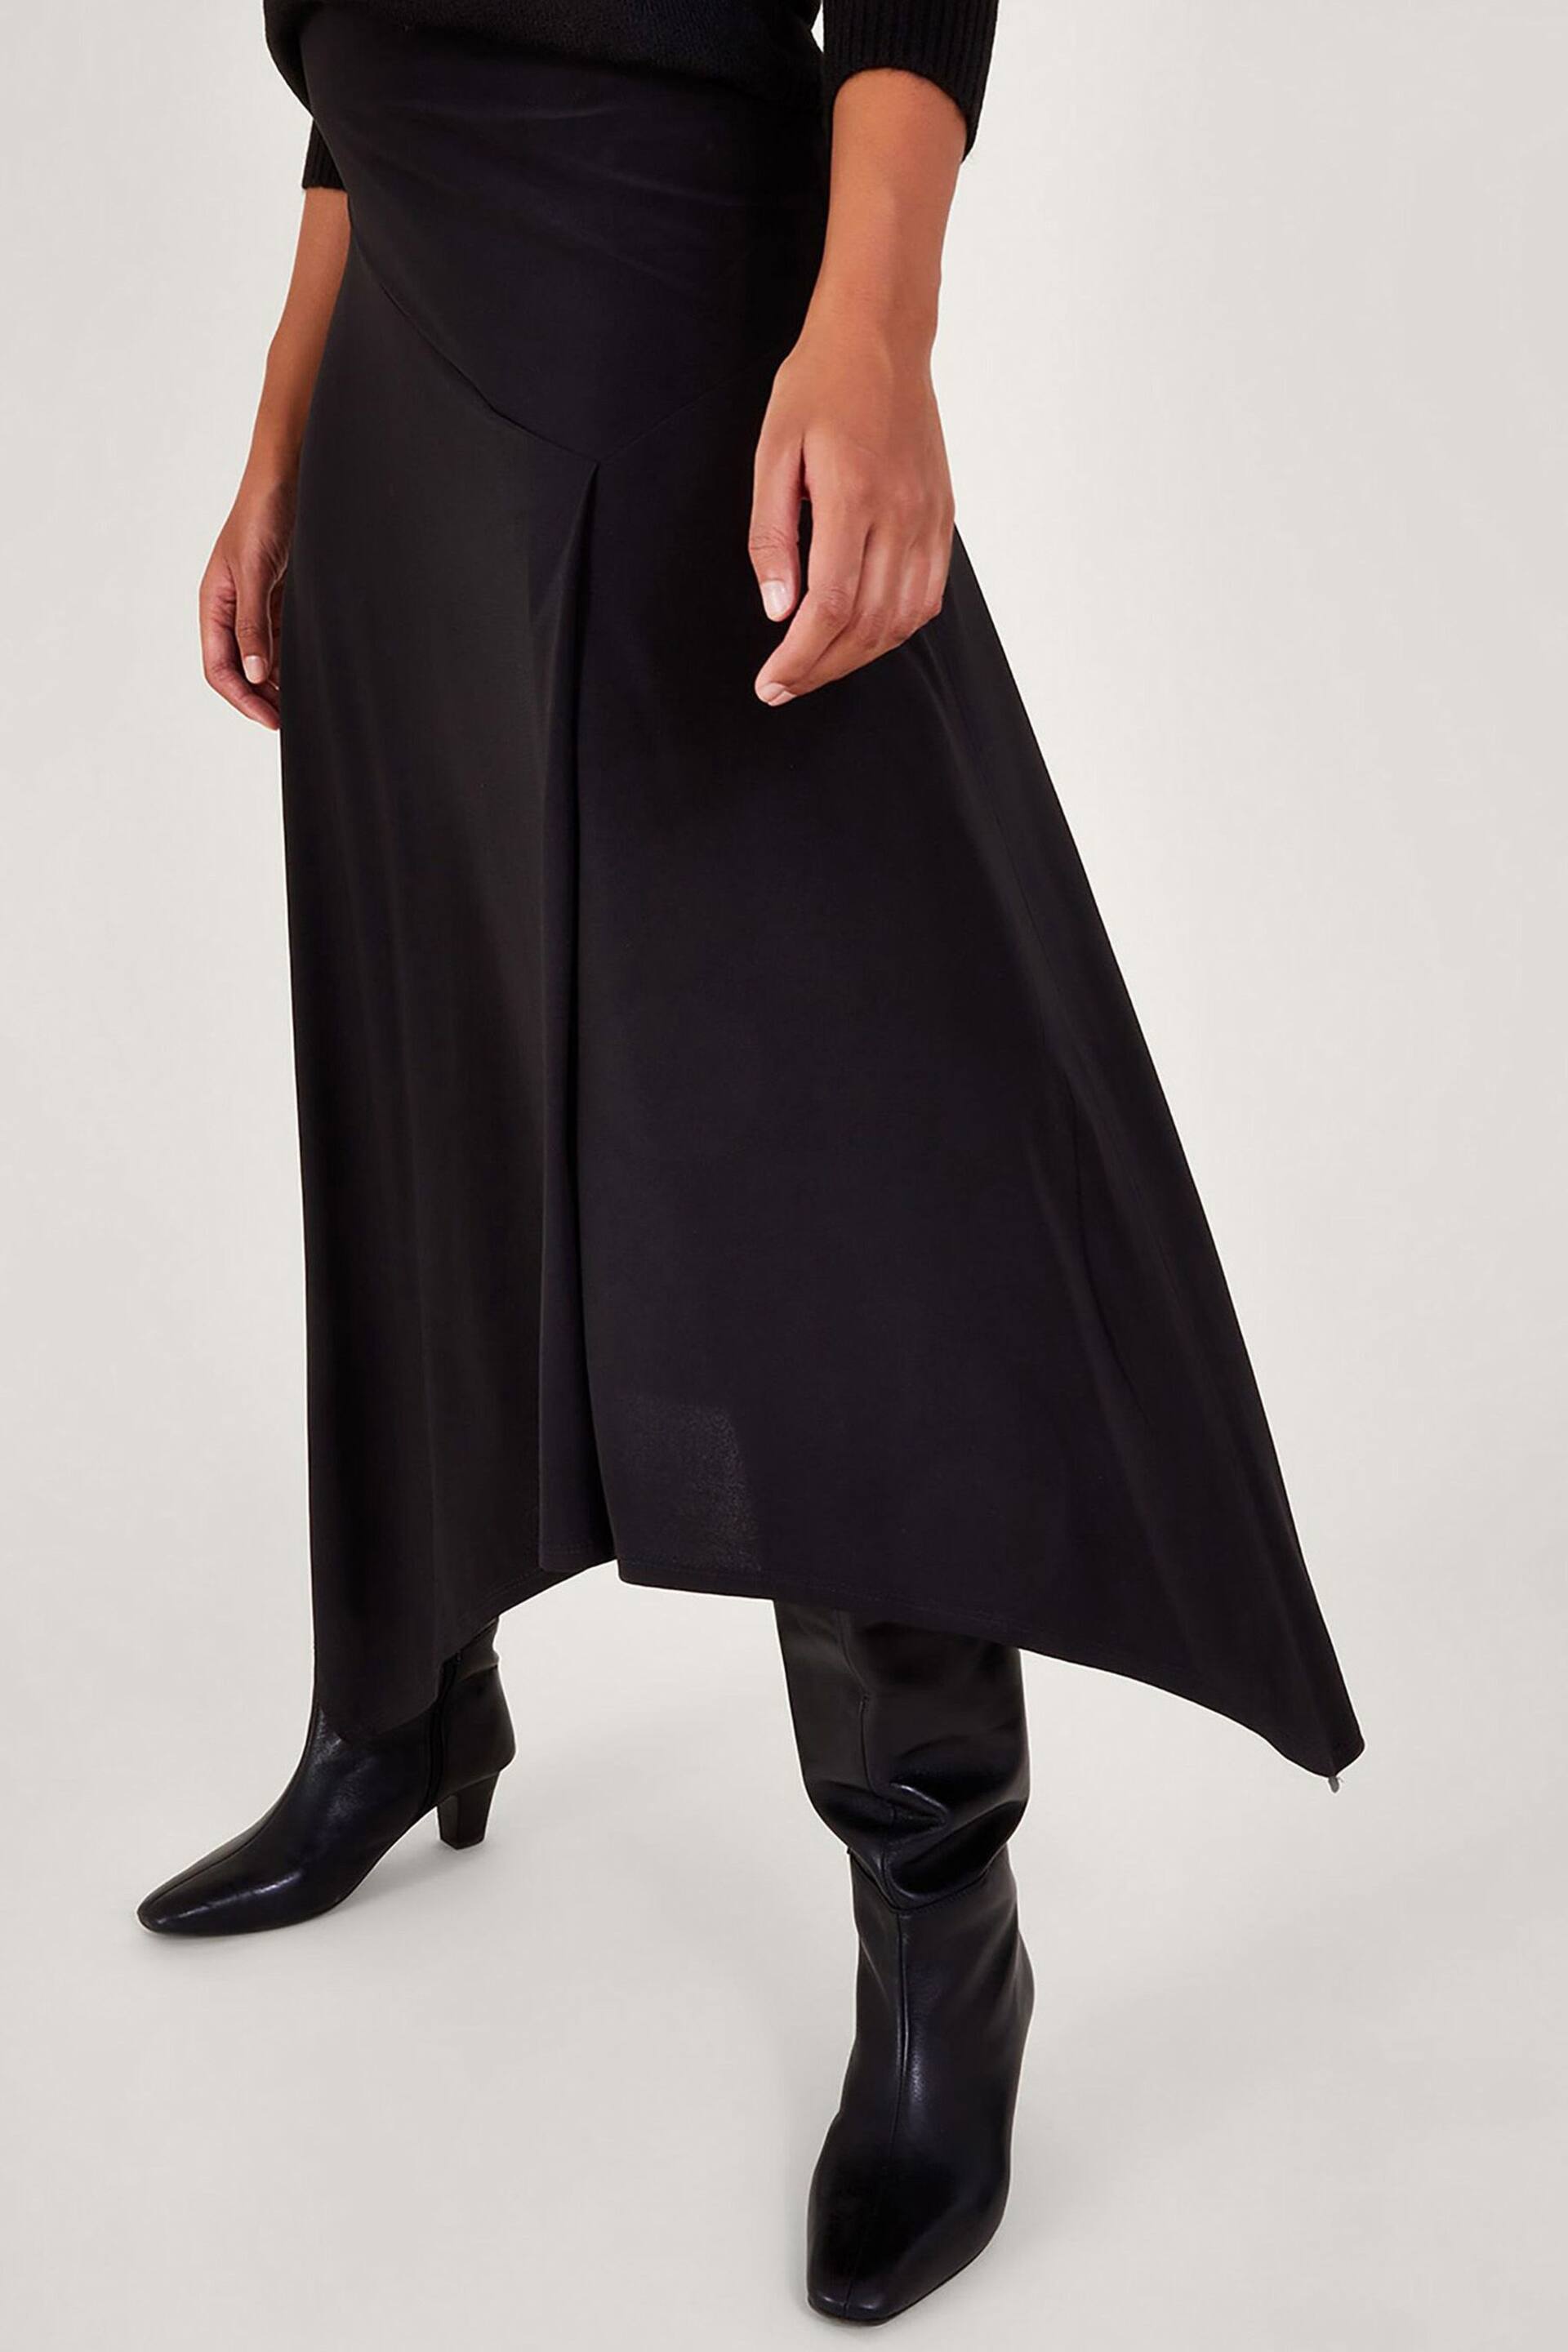 Monsoon Black Fenn Flare Skirt - Image 4 of 5